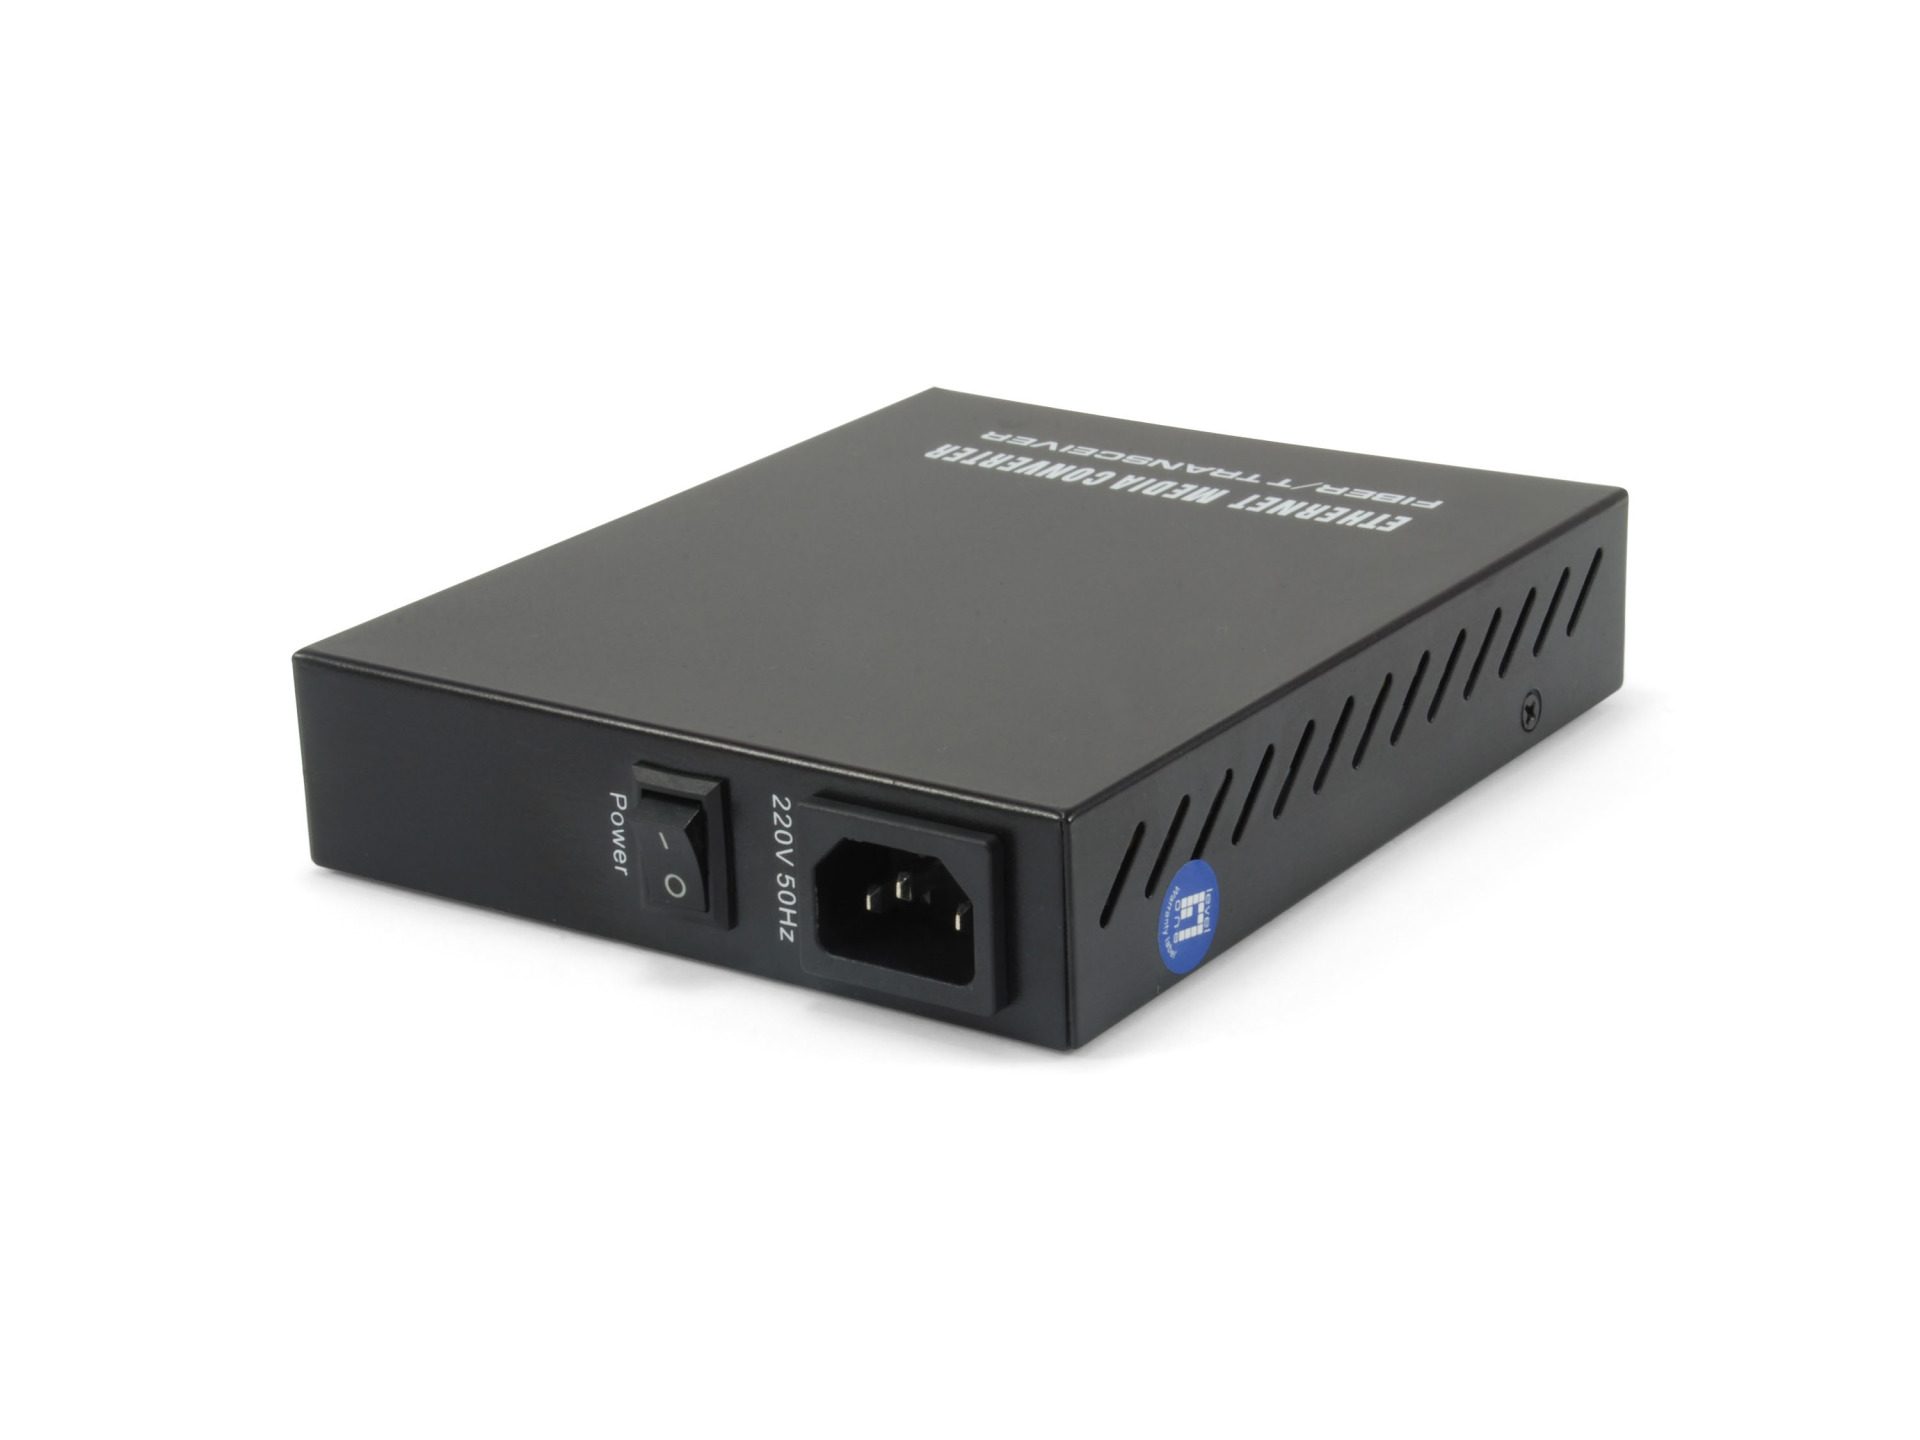 Managed Media Converter, Gigabit Ethernet, RJ45-SFP, internal power